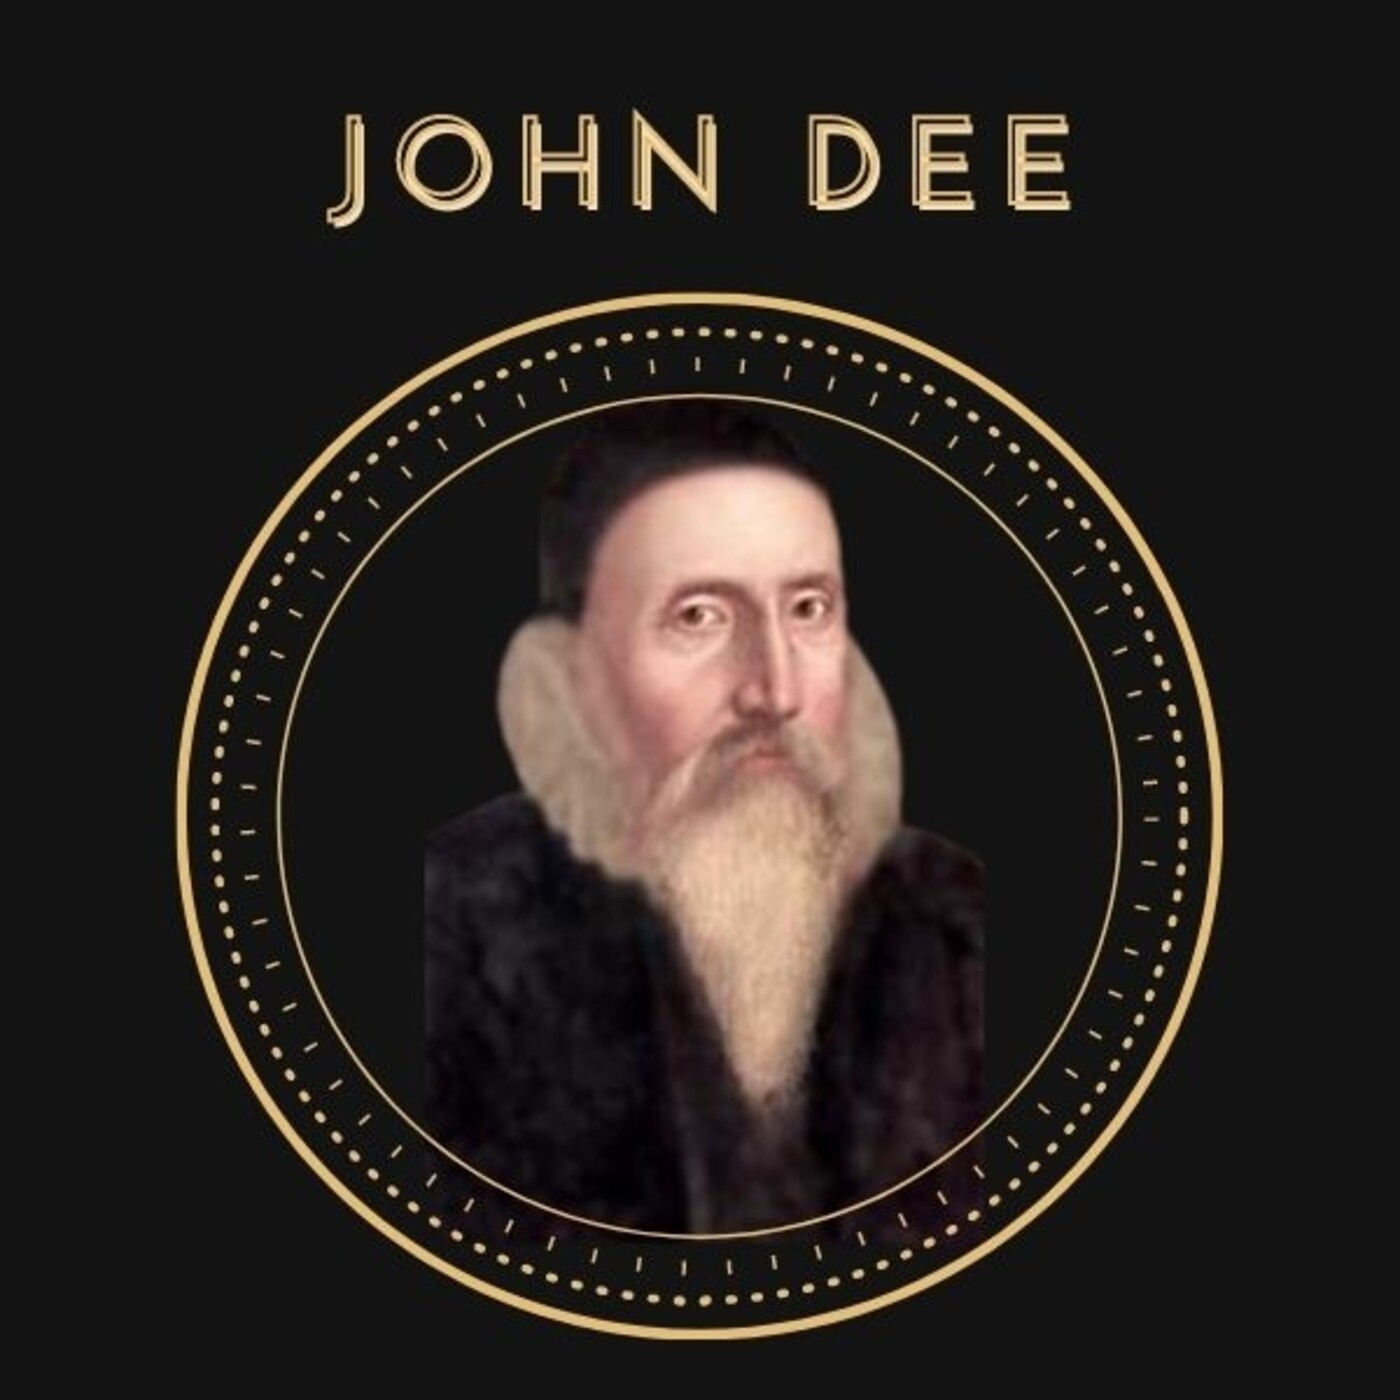 Ep. 11 Historia Oculta: John Dee. Conversaciones Angelicales